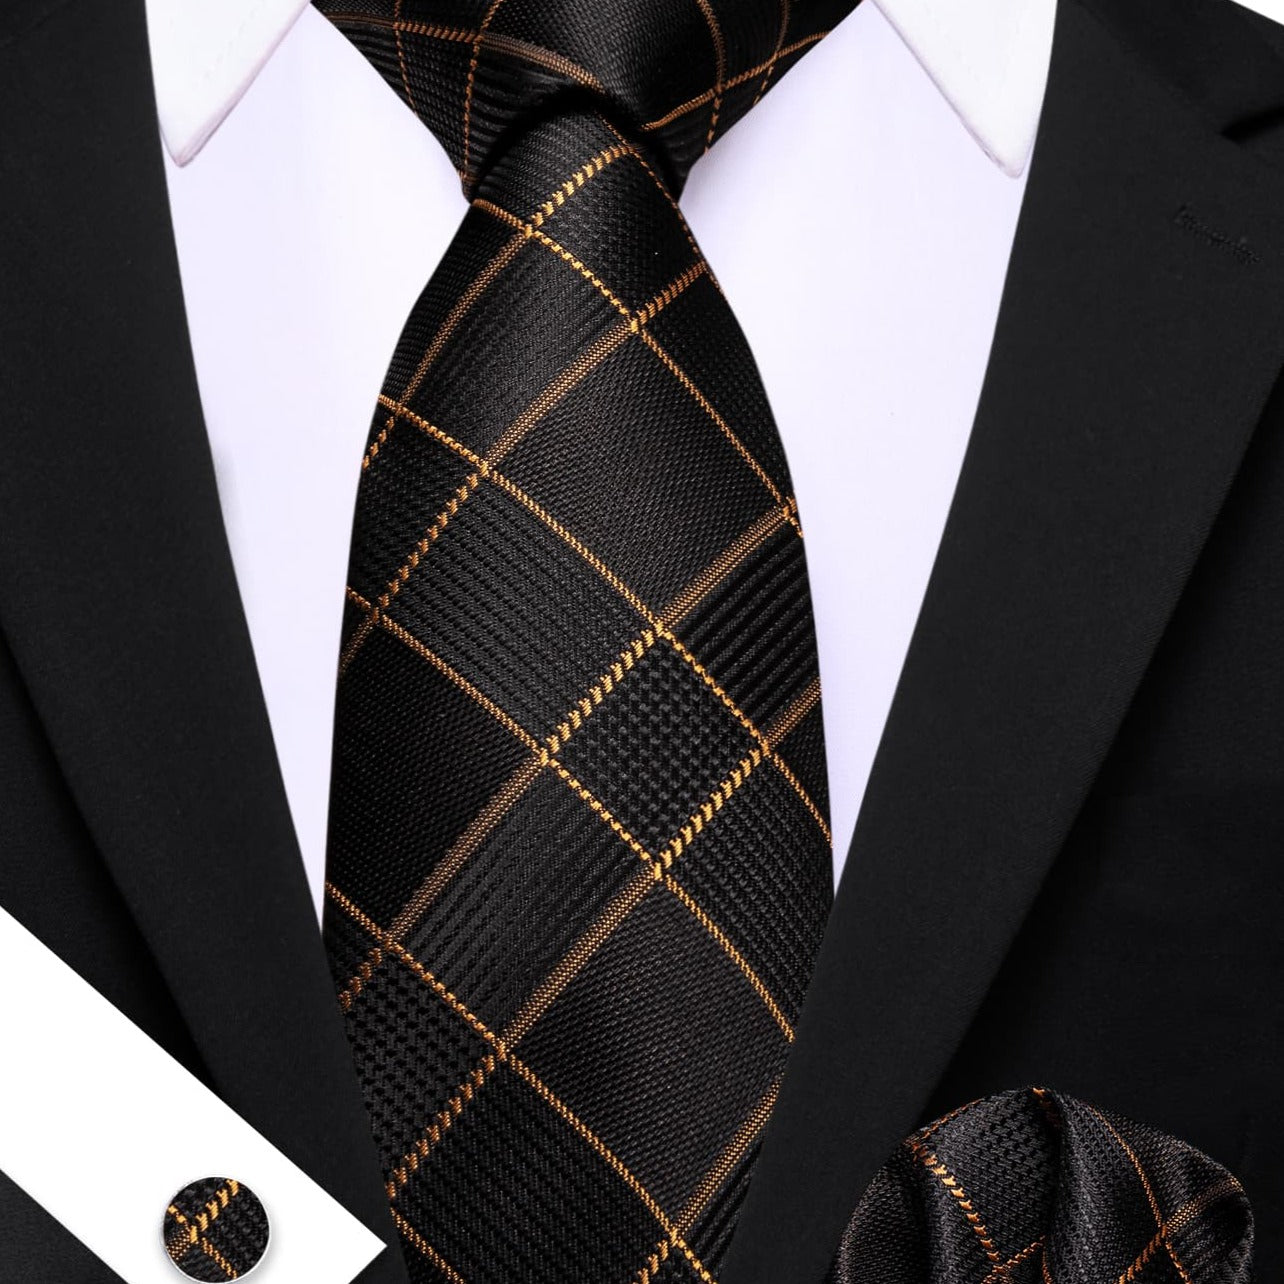  Black Plaid Tie with Golden Stripes Men's Business Set